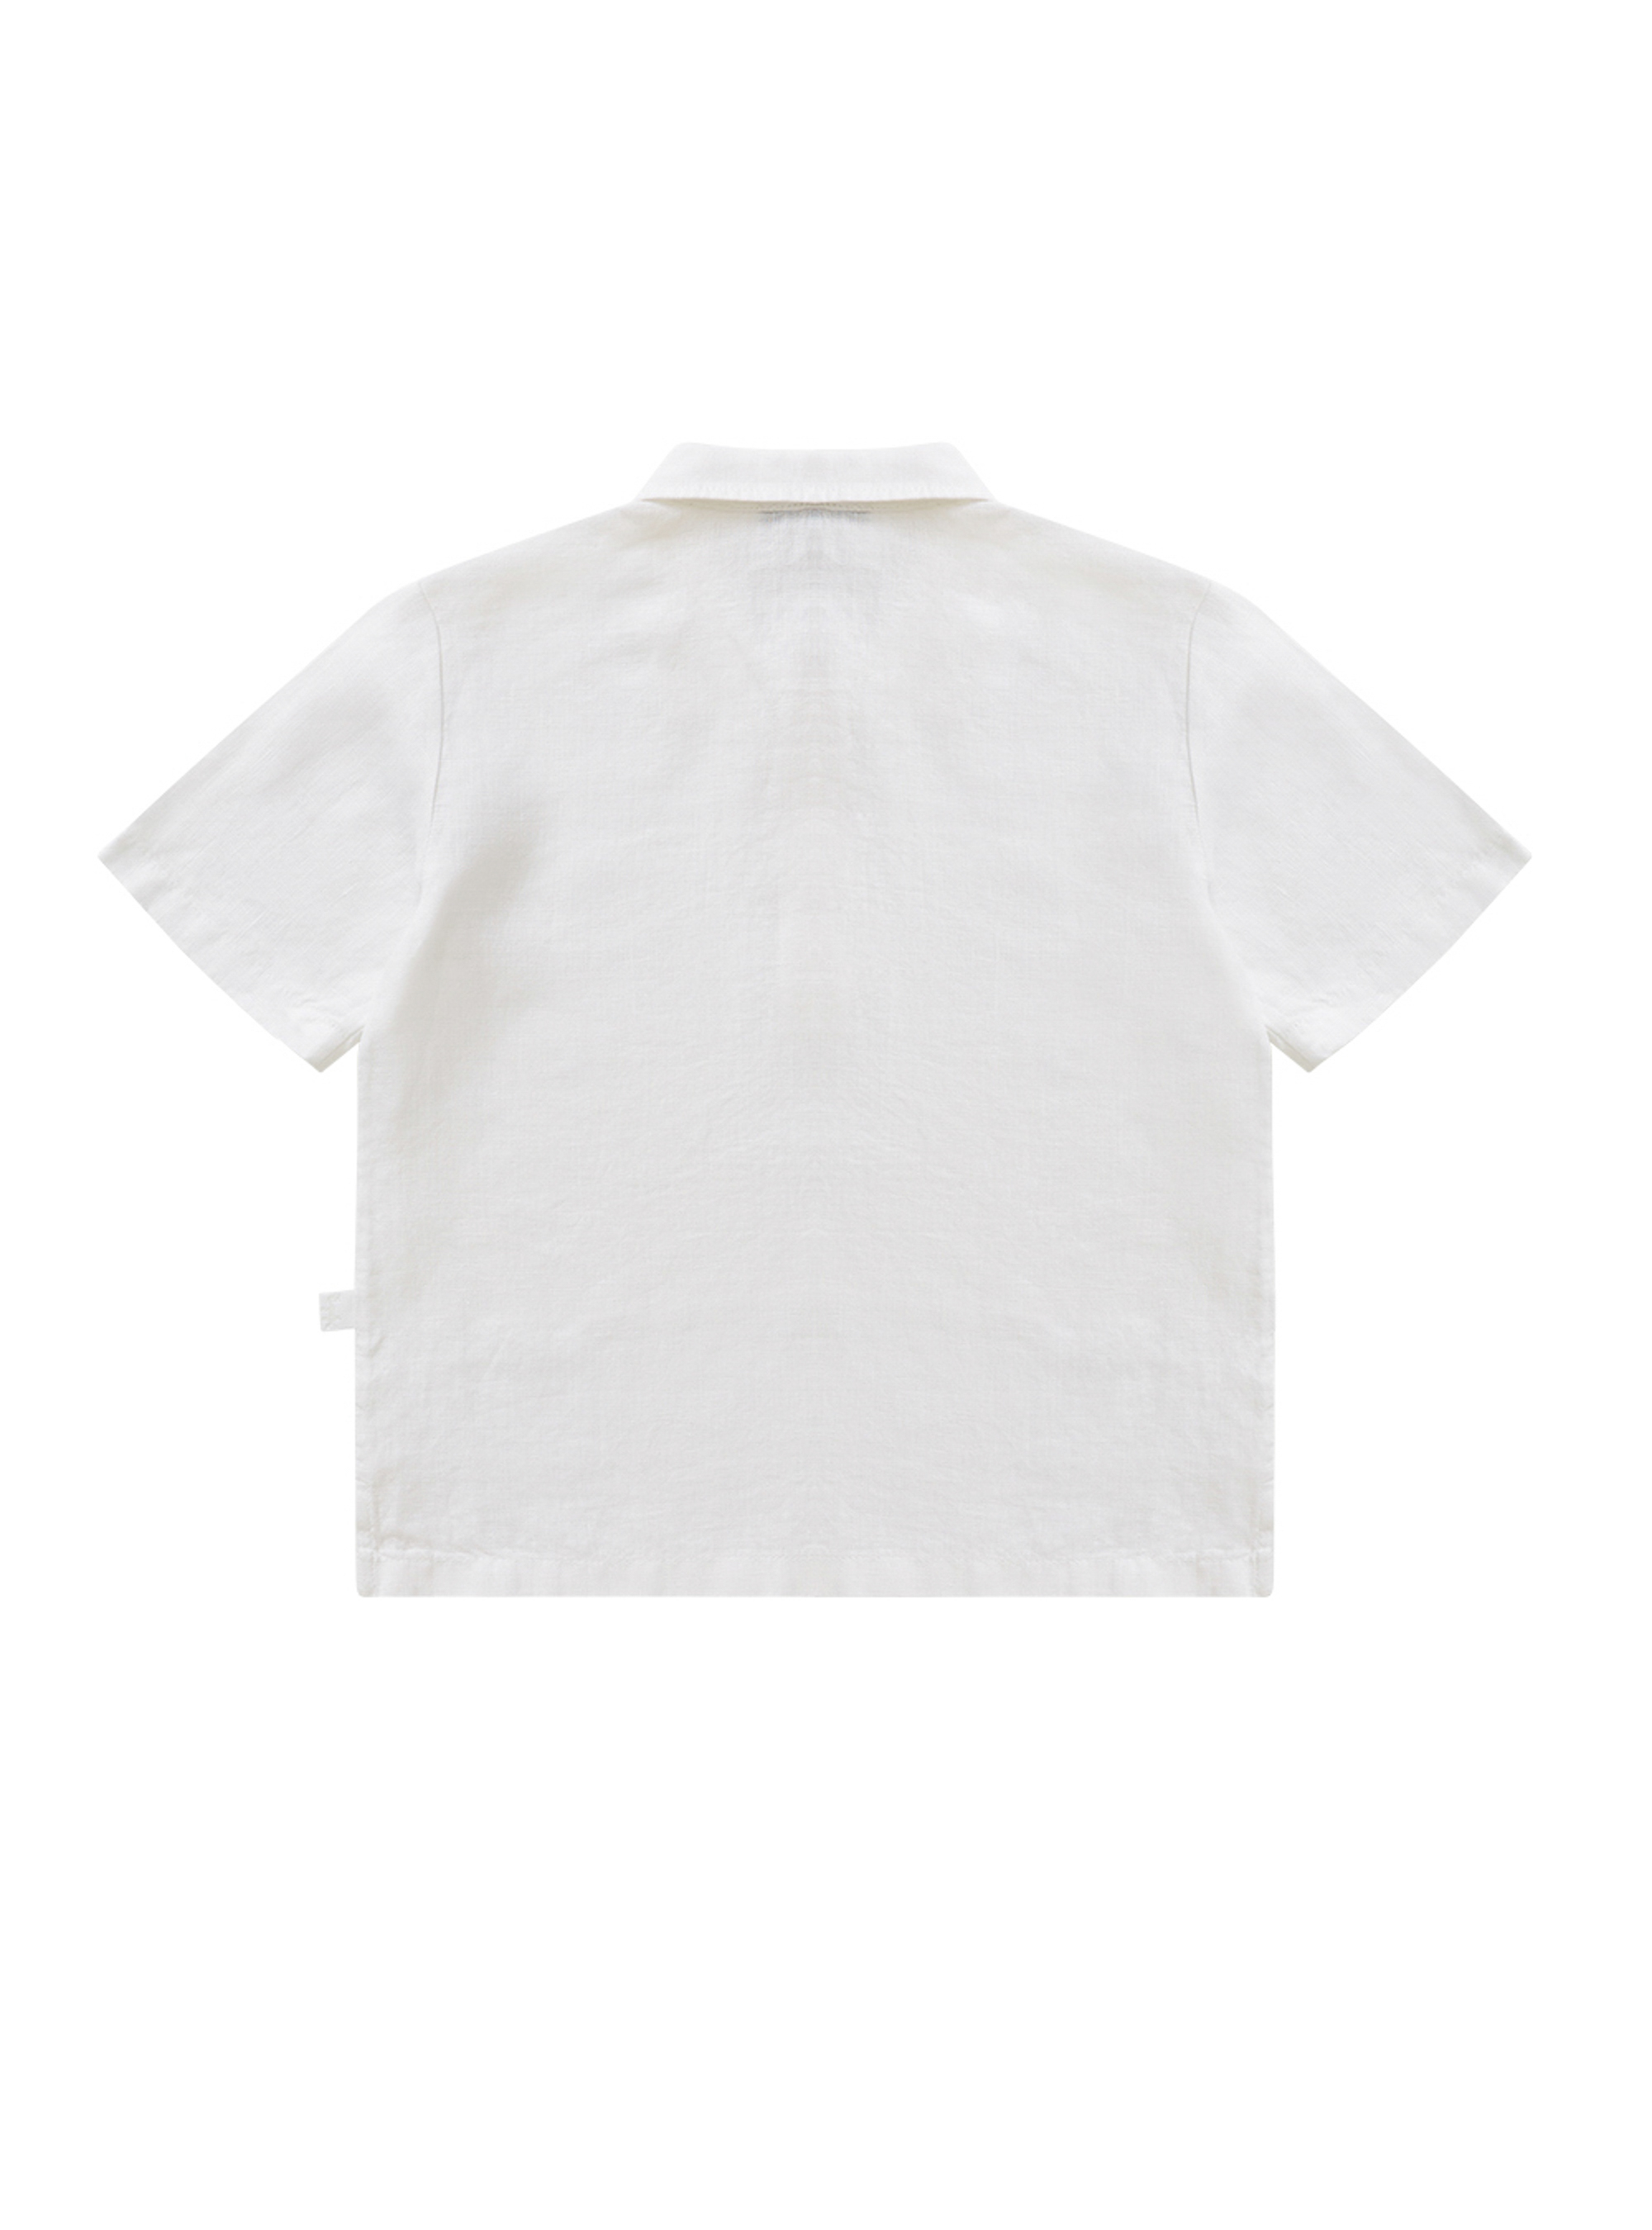 White linen polo-shirt - White | Il Gufo